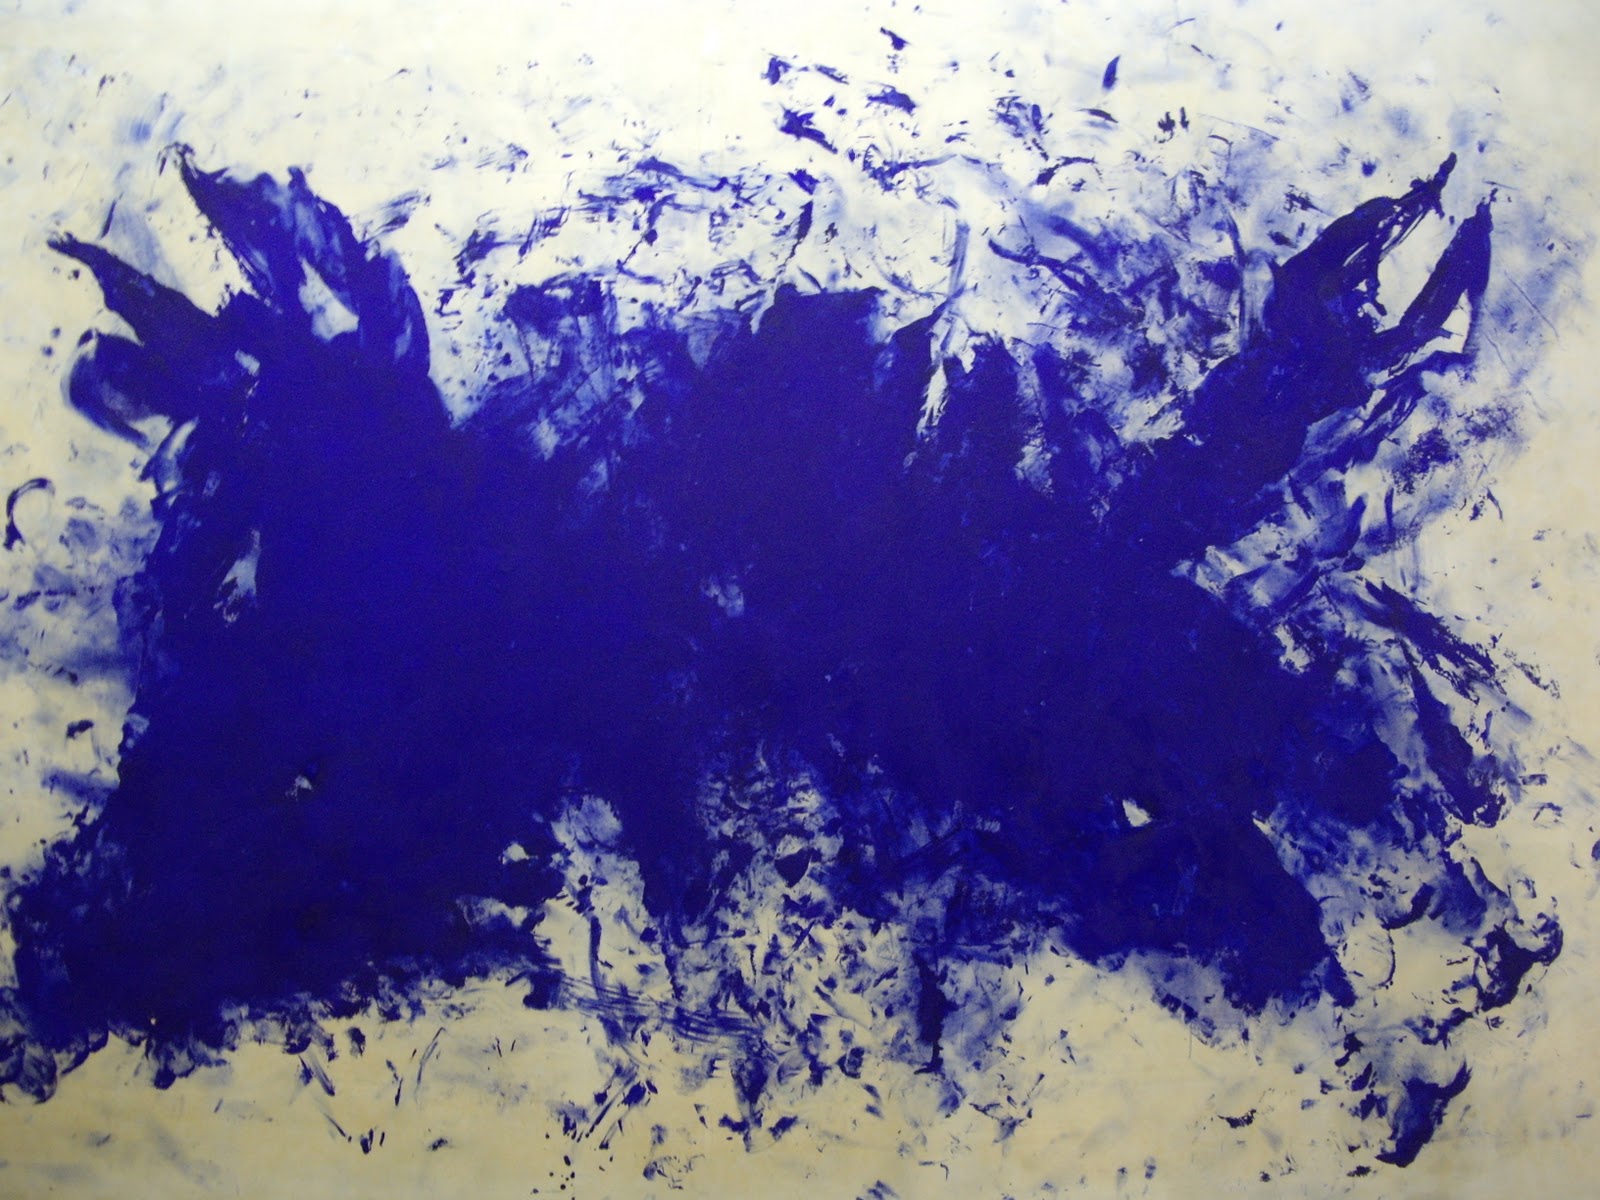 伟大的蓝色食人主义，向田纳西·威廉斯致敬 by 伊夫 克莱因 - 1960 - 276 x 418 cm 蓬皮杜中心